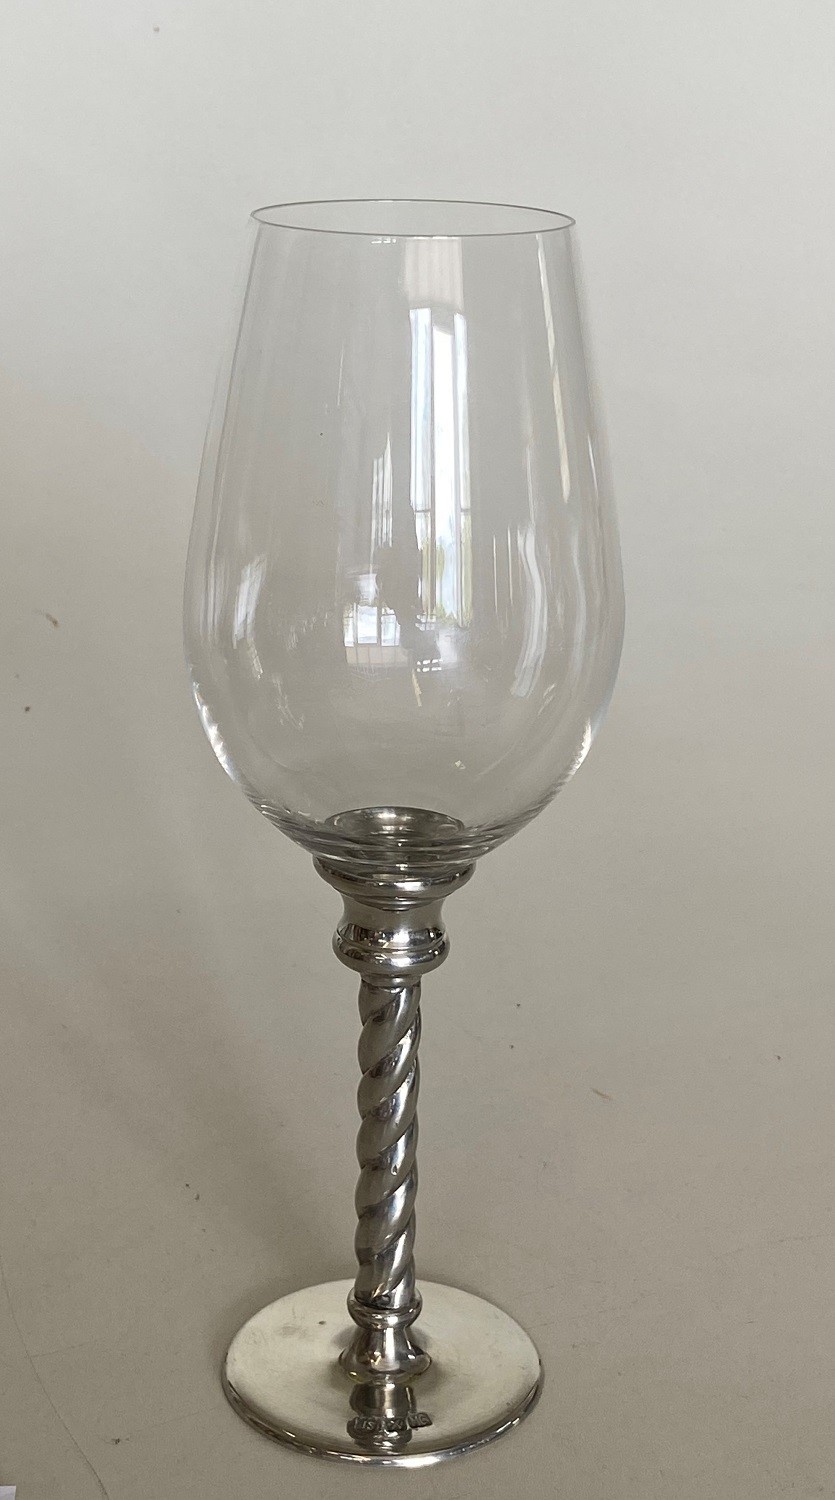 Taça de cristal para VINHO TINTO, capacidade 240ml com haste de estanho do tipo corda (P426B15)